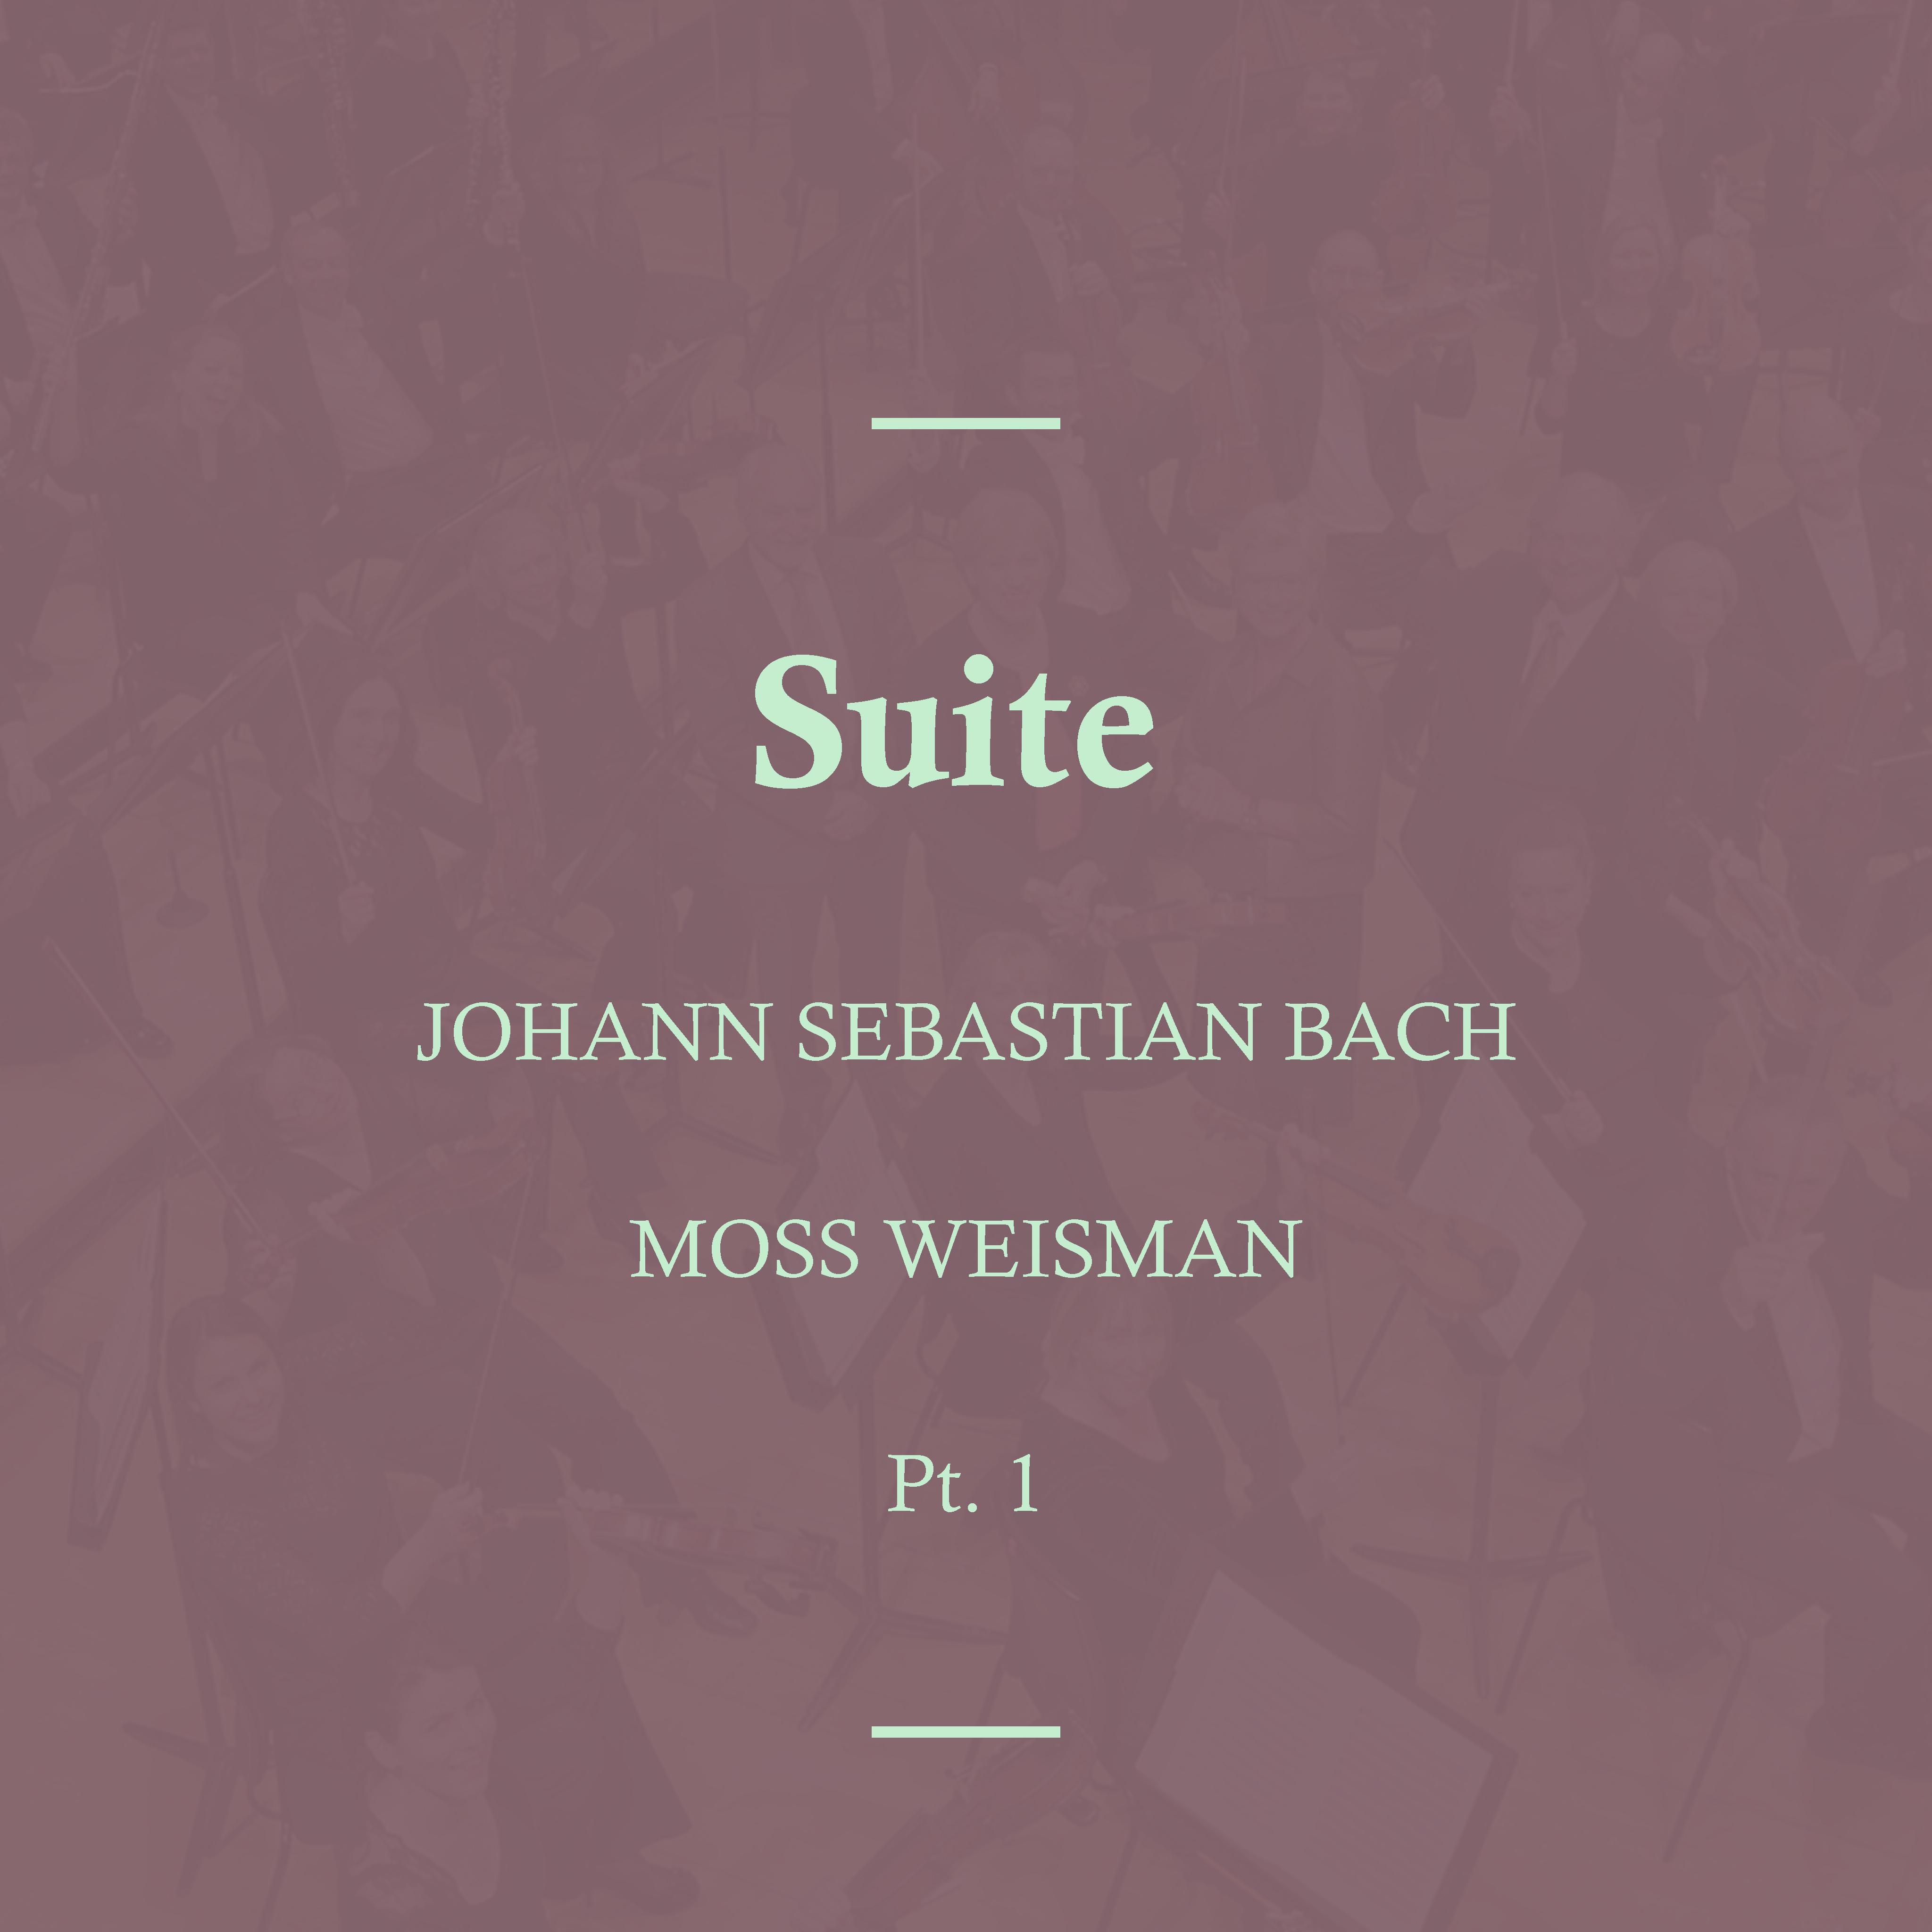 Suite in C Minor, BWV. 997: III. Sarabande